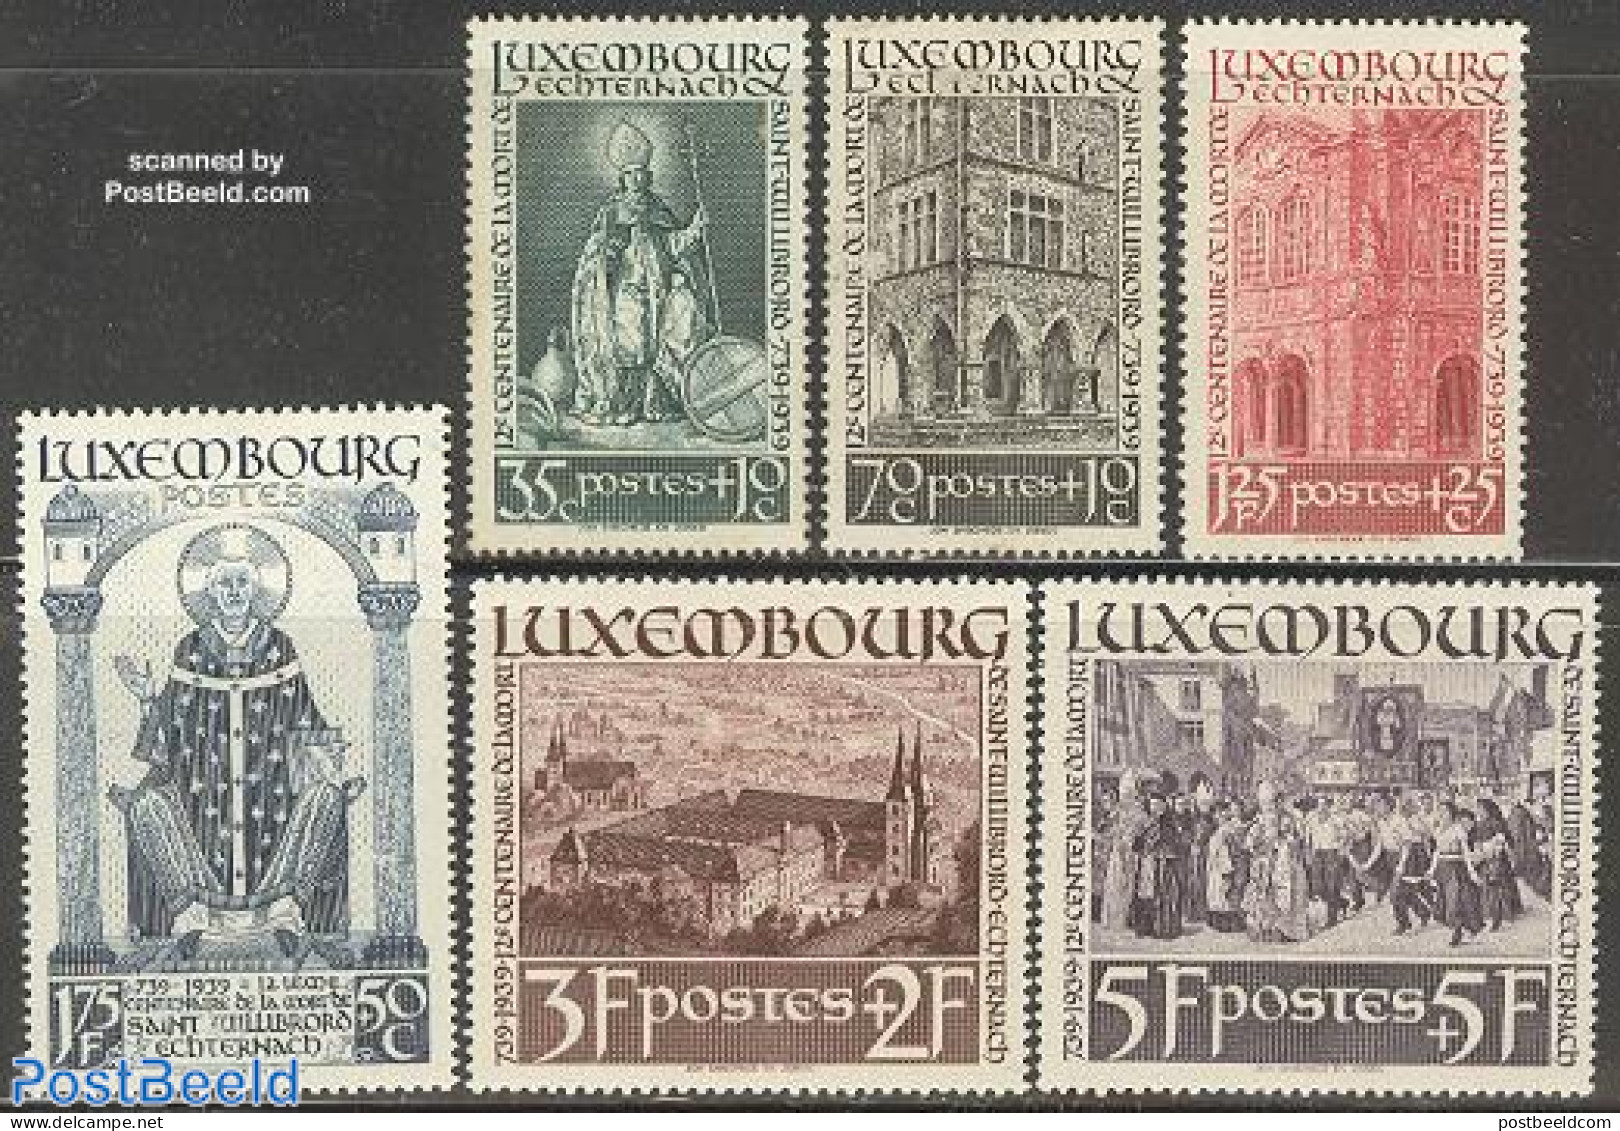 Luxemburg 1938 Willibrord 6v, Mint NH, Religion - Cloisters & Abbeys - Religion - Ongebruikt